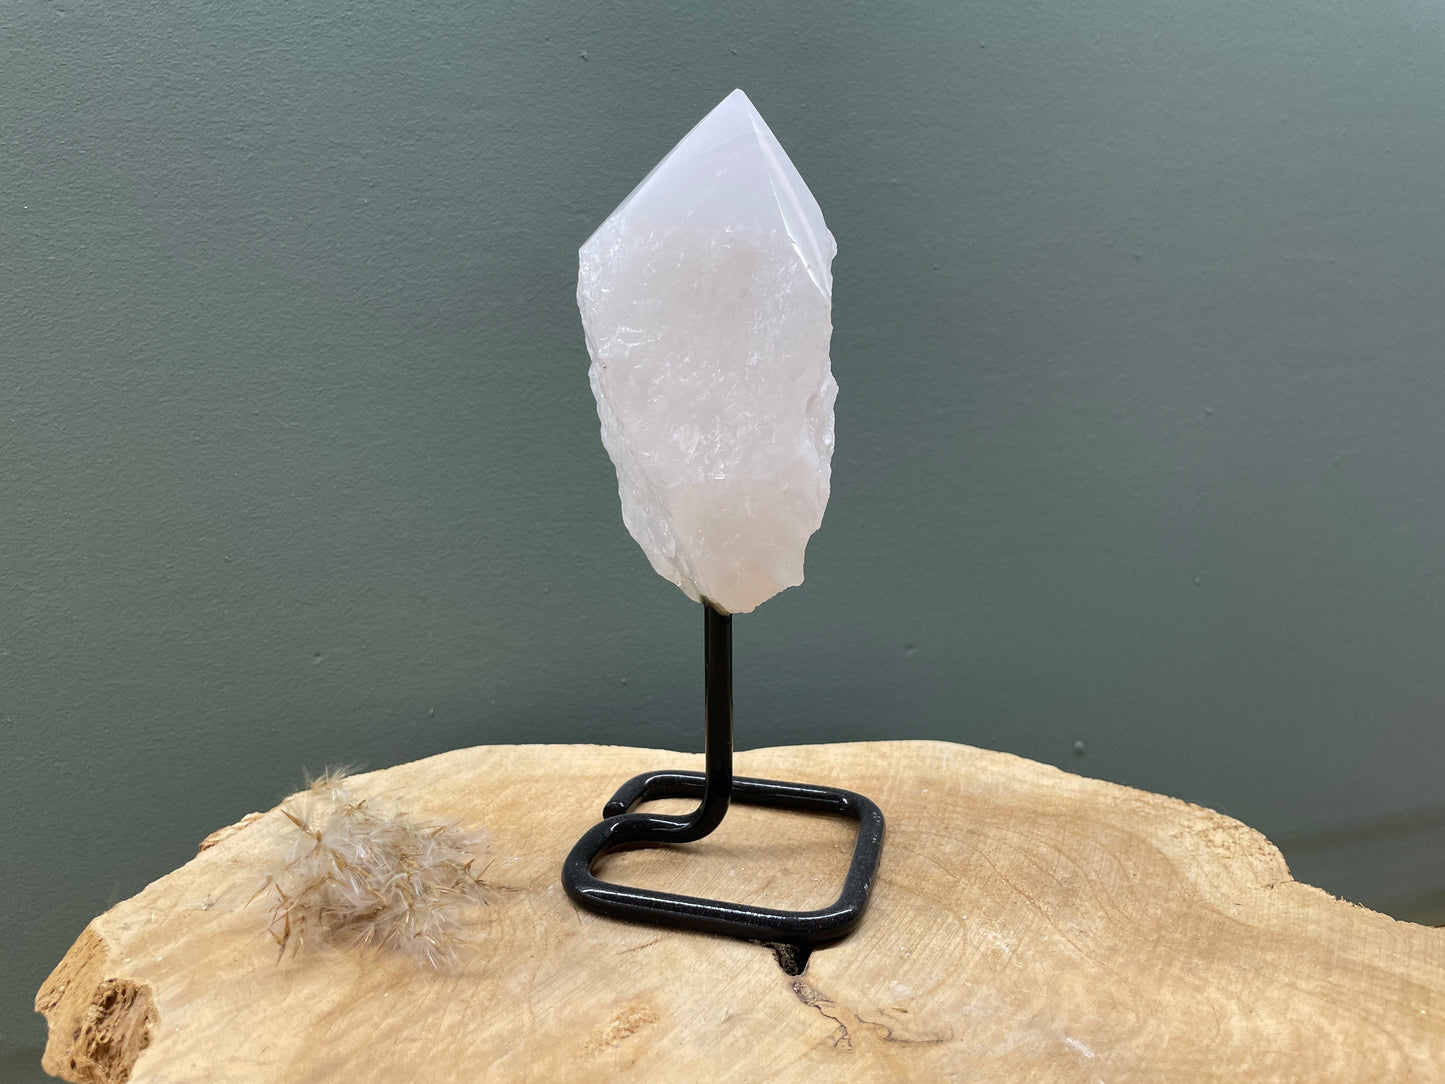 Bergkristal op standaard